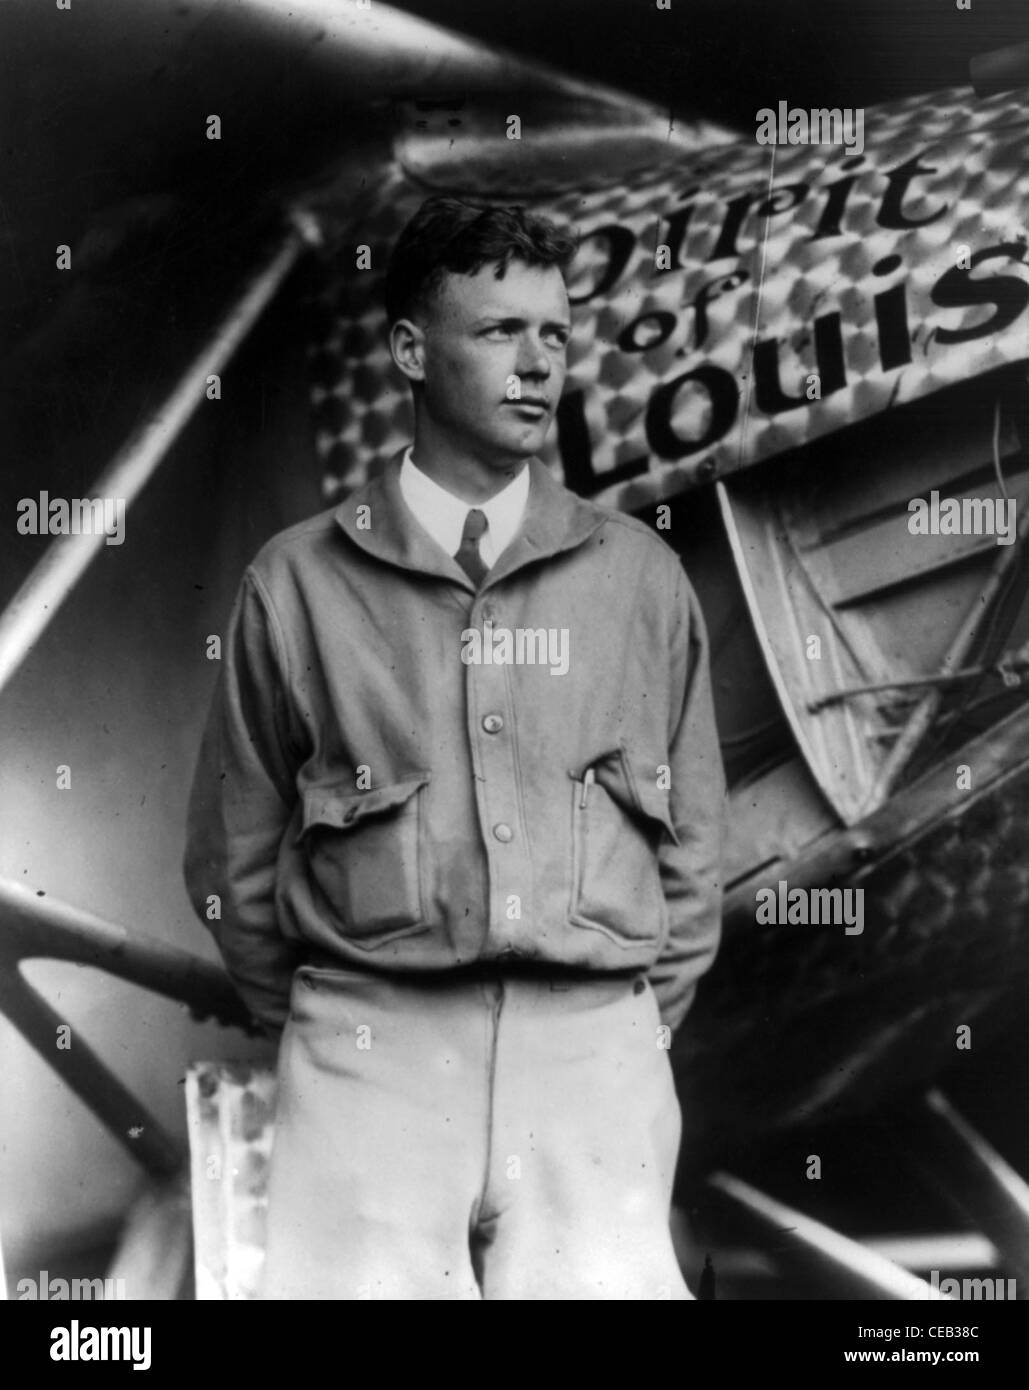 Charles Augustus Lindbergh war ein amerikanischer Flieger, Autor, Erfinder, Explorer und sozialer Aktivist. Stockfoto